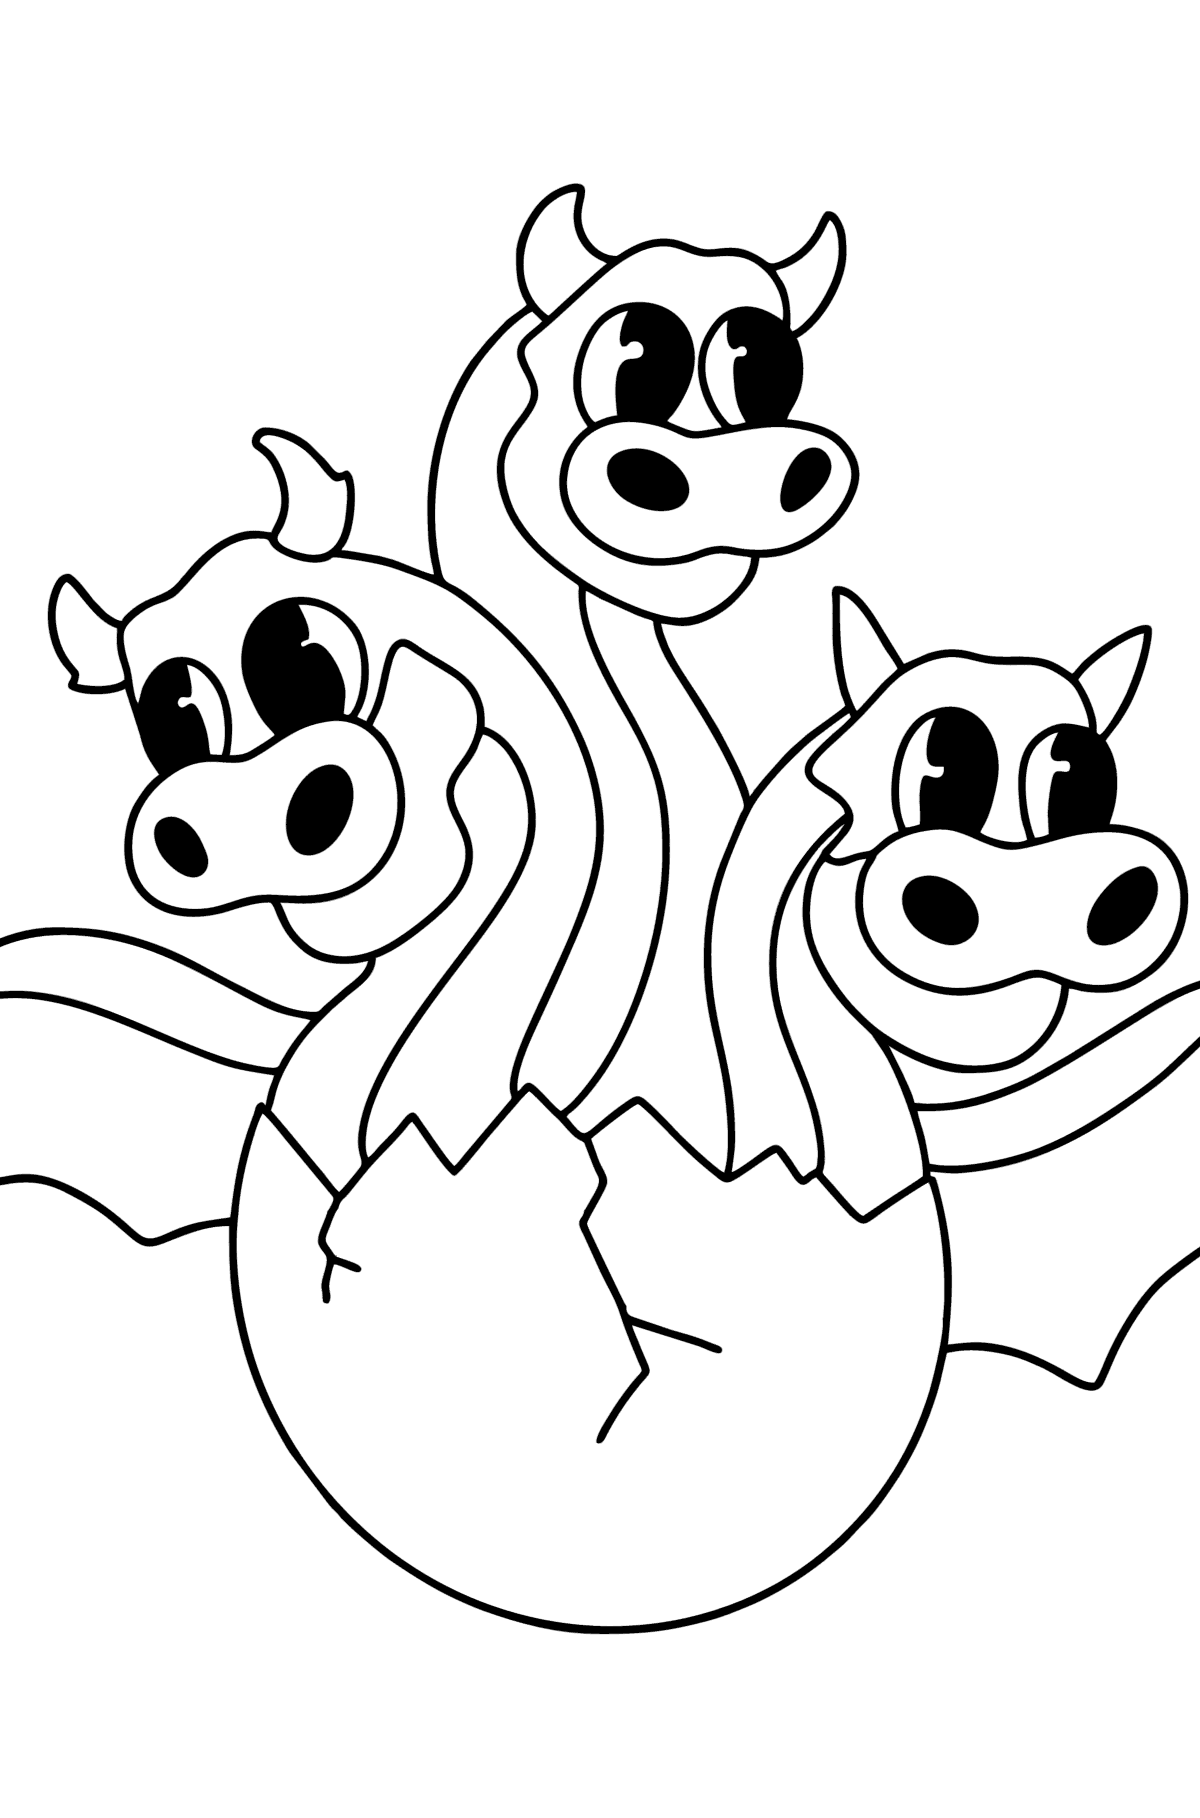 Desen de colorat dragon cu trei capete - Desene de colorat pentru copii